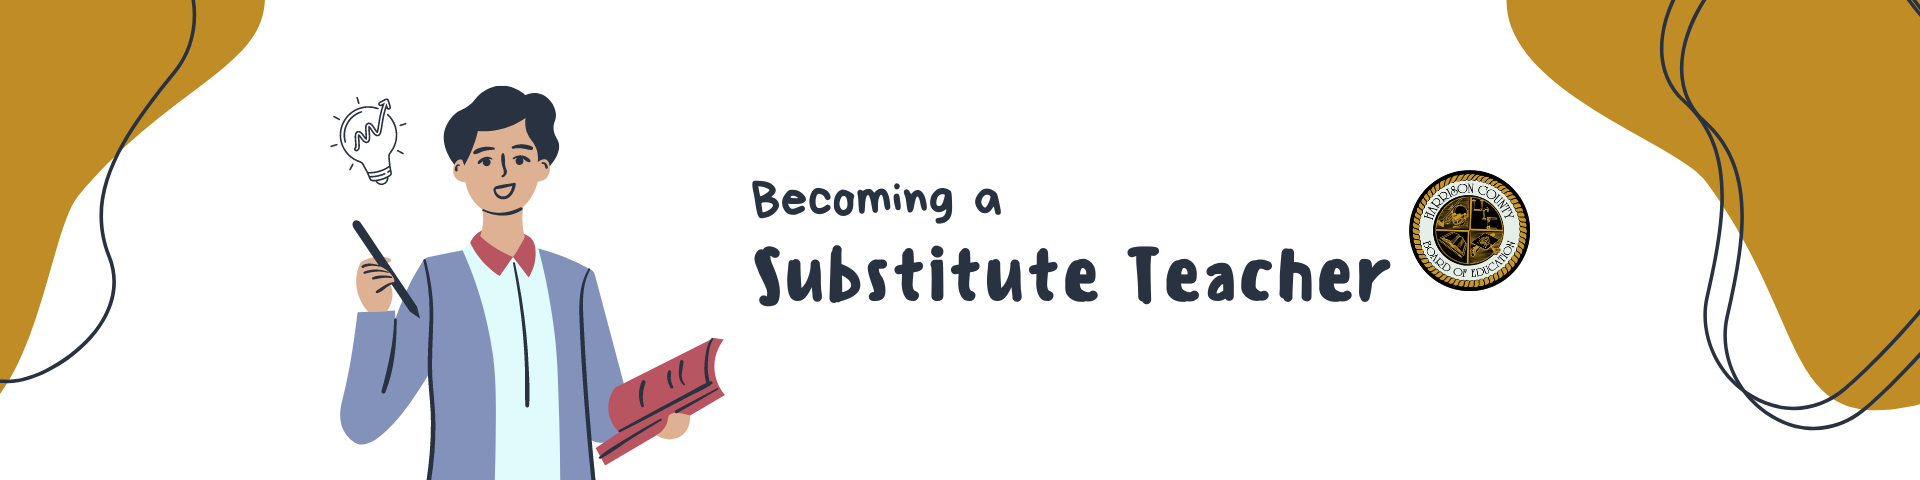 Becoming a Substitute Teacher